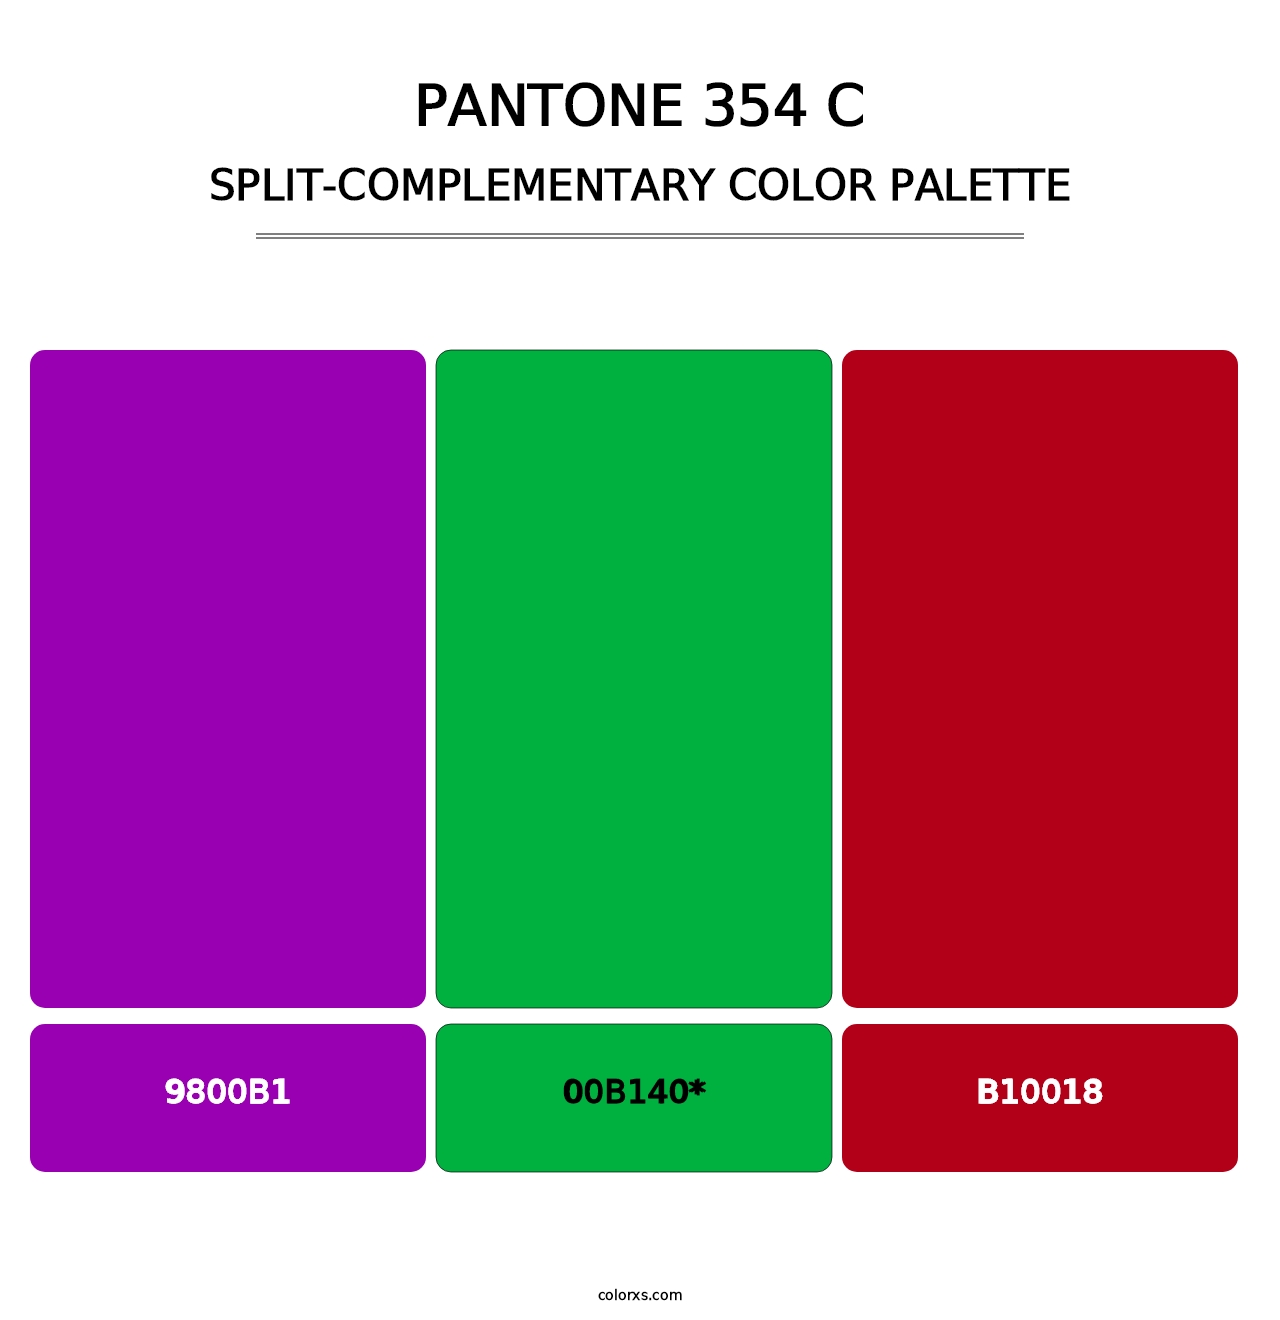 PANTONE 354 C - Split-Complementary Color Palette